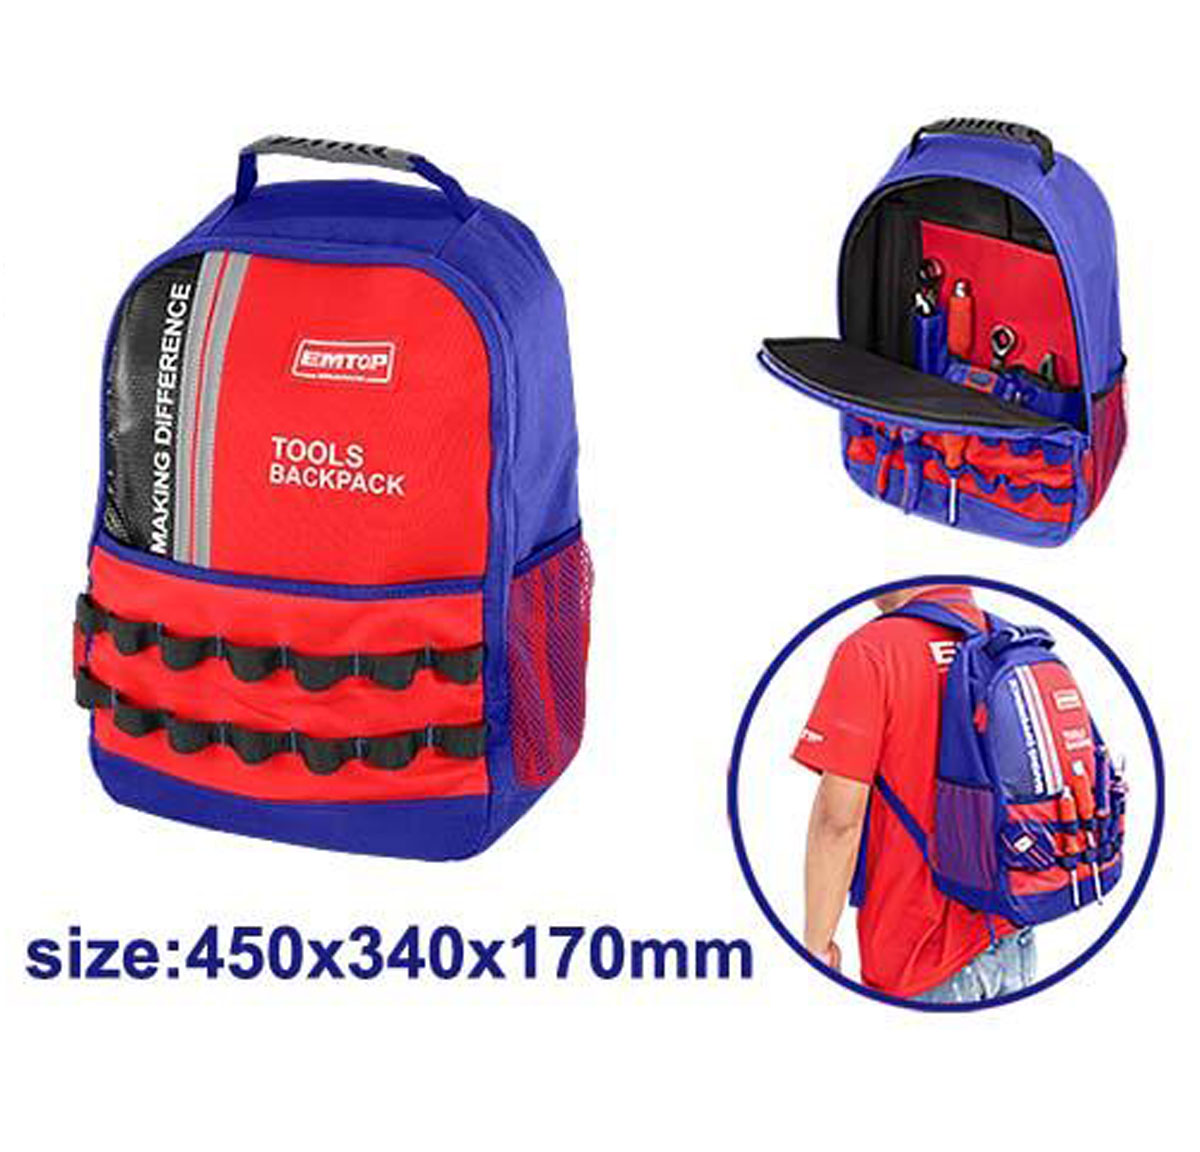 EMTOP Tools backpack ETBG58185